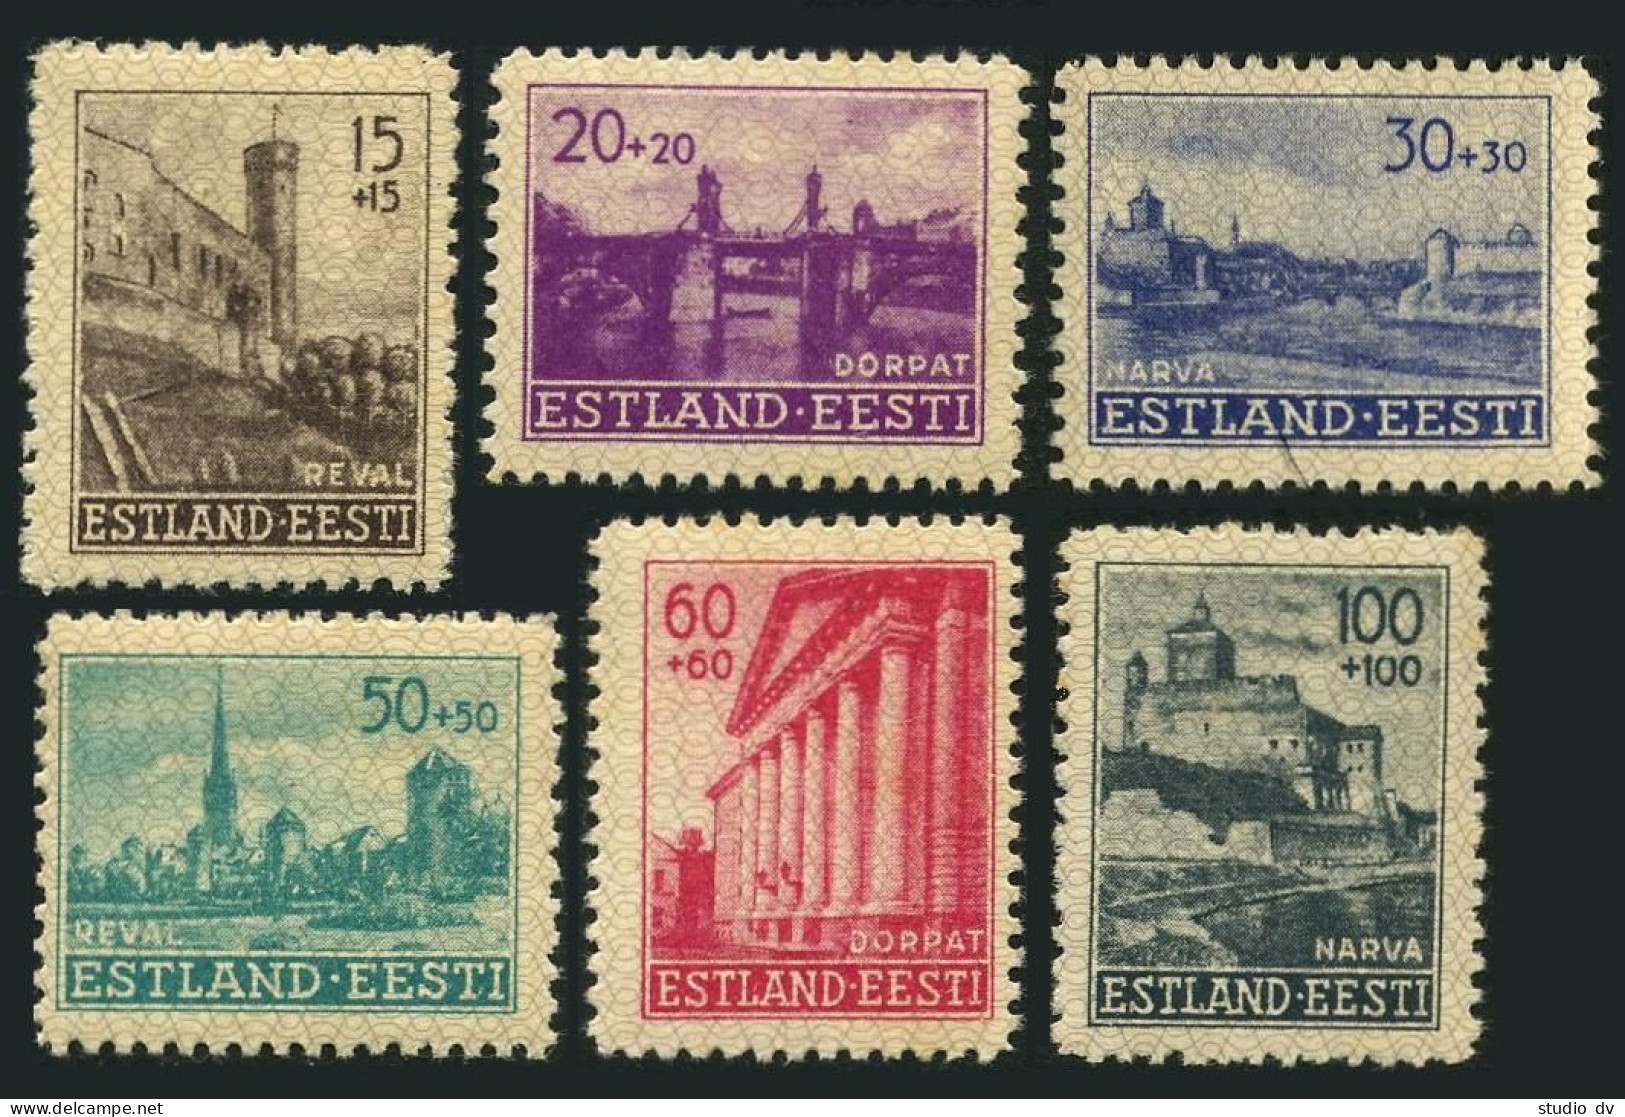 Estonia NB1-NB6,MNH.Michel 4-9. WW II Occupation Stamps,1941.Tallinn,Tartu,Narva - Estonia